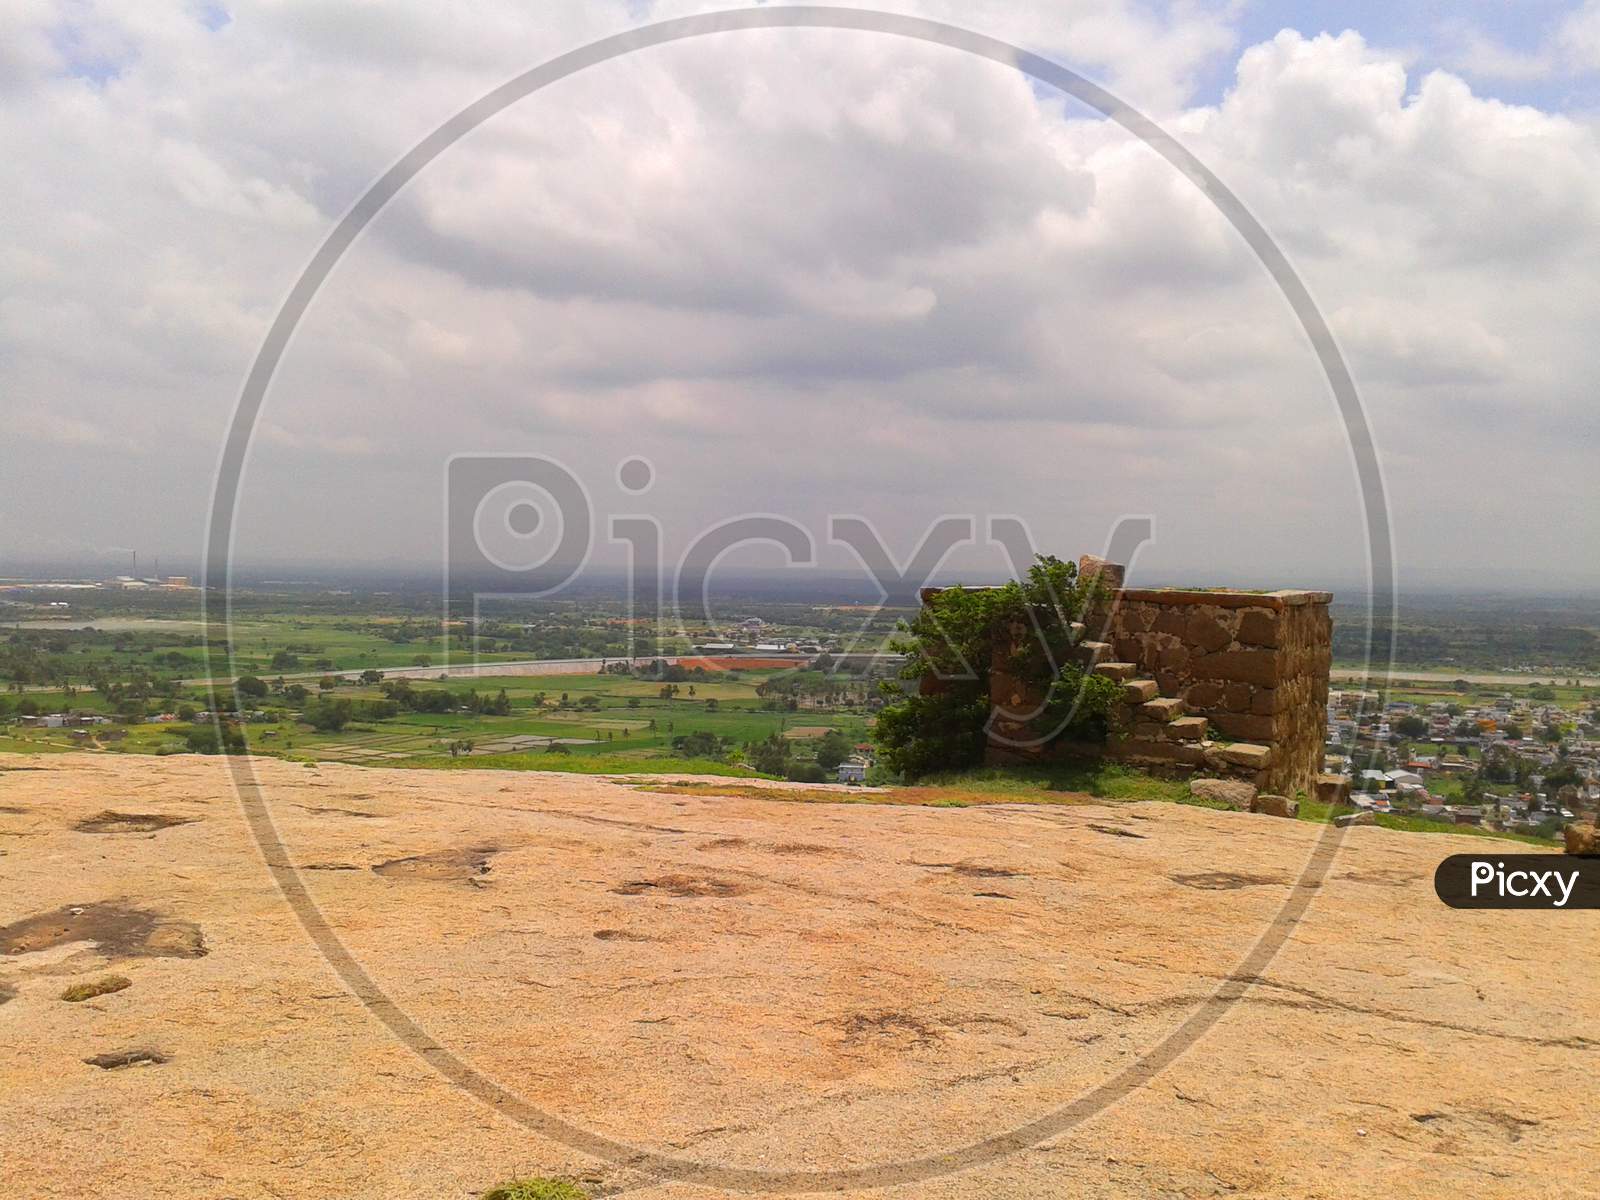 Bhuvanagiri Fort ruins on top